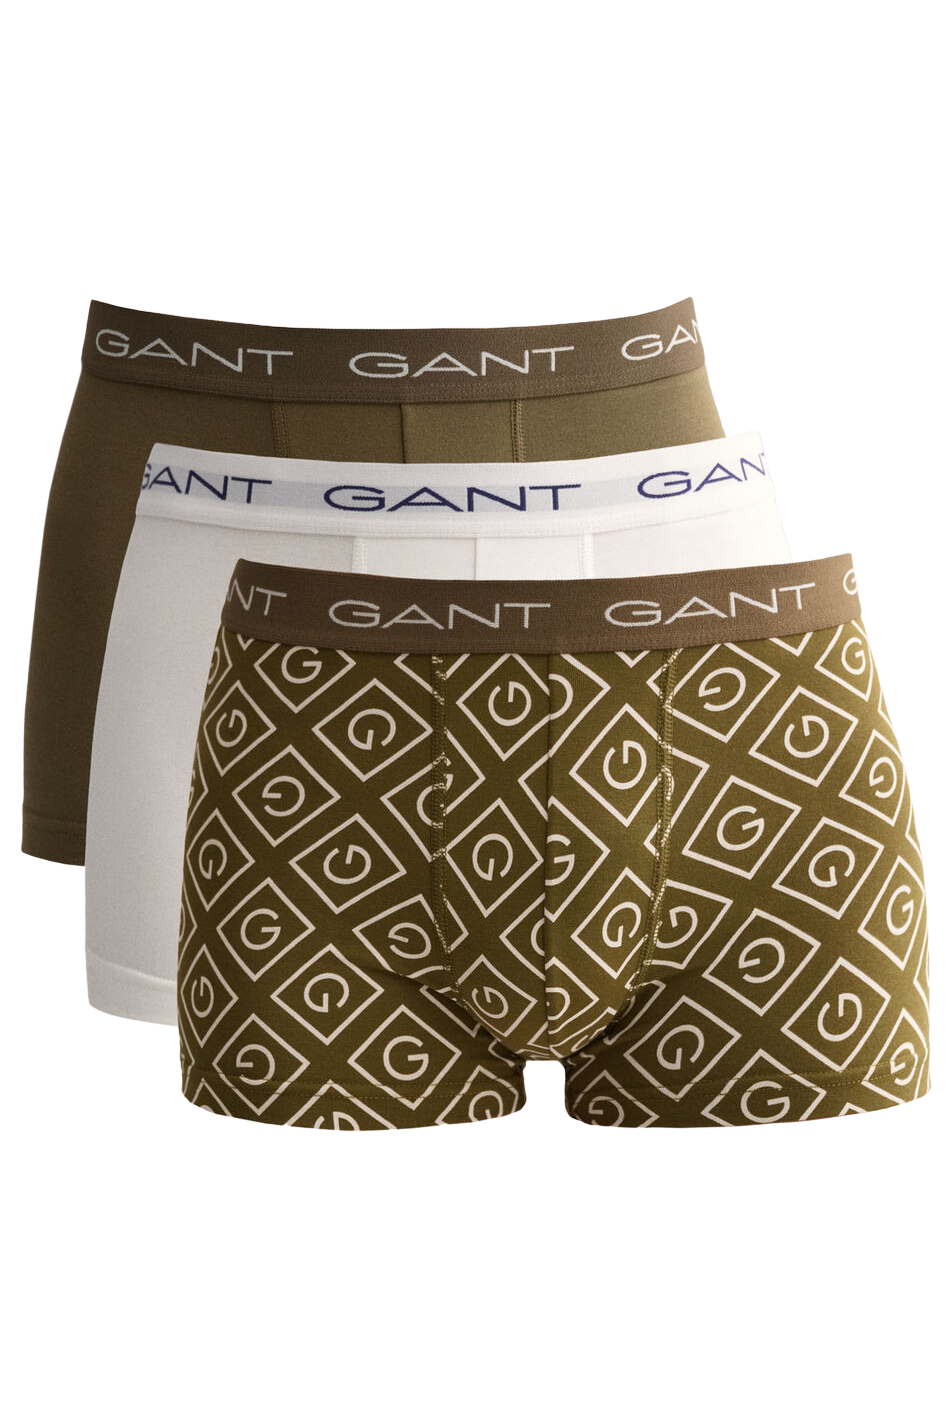 Gant 3 Pack Men's Iconic G Trunk